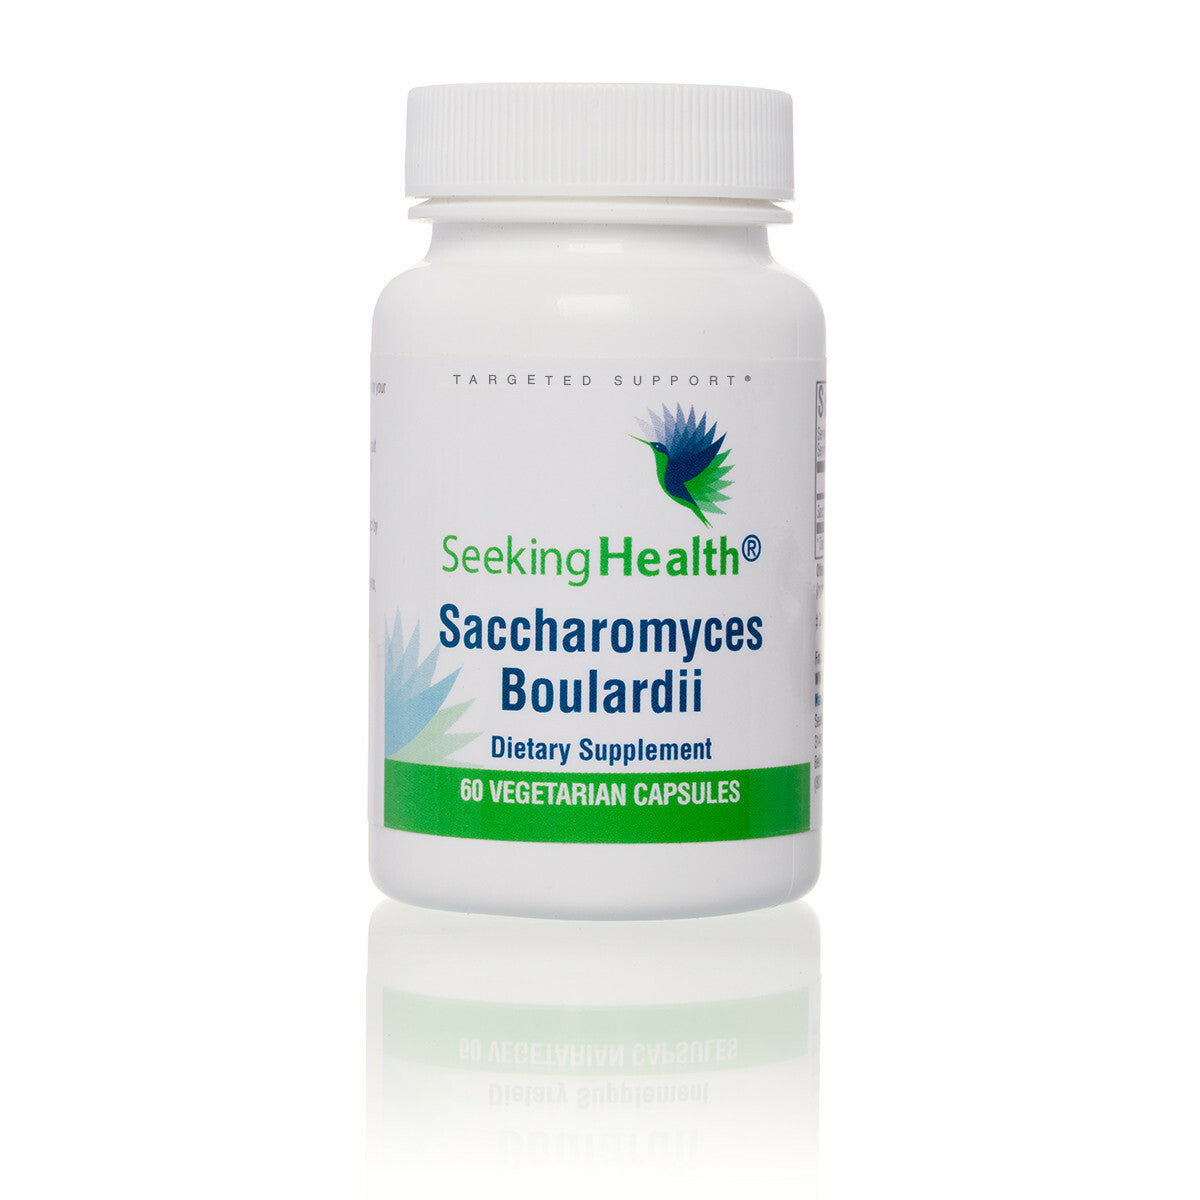 Saccharomyces Boulardii 60 capsules Seeking Health - Premium Vitamins & Supplements from Seeking Health - Just $21.95! Shop now at Nutrigeek